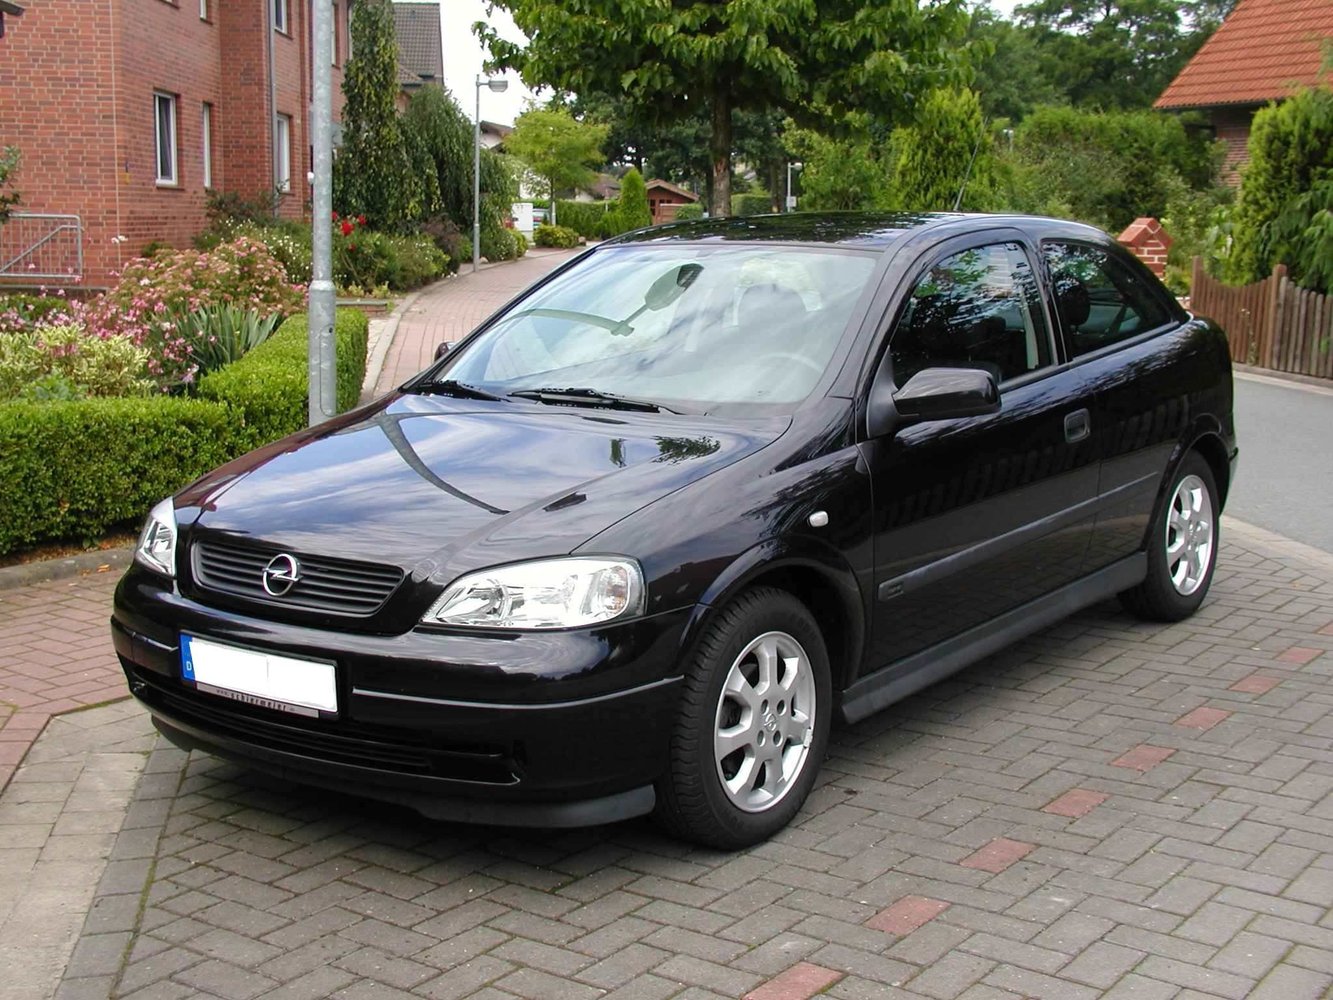 хэтчбек 3 дв. Opel Astra 1998 - 2004г выпуска модификация 1.2 AT (75 л.с.)